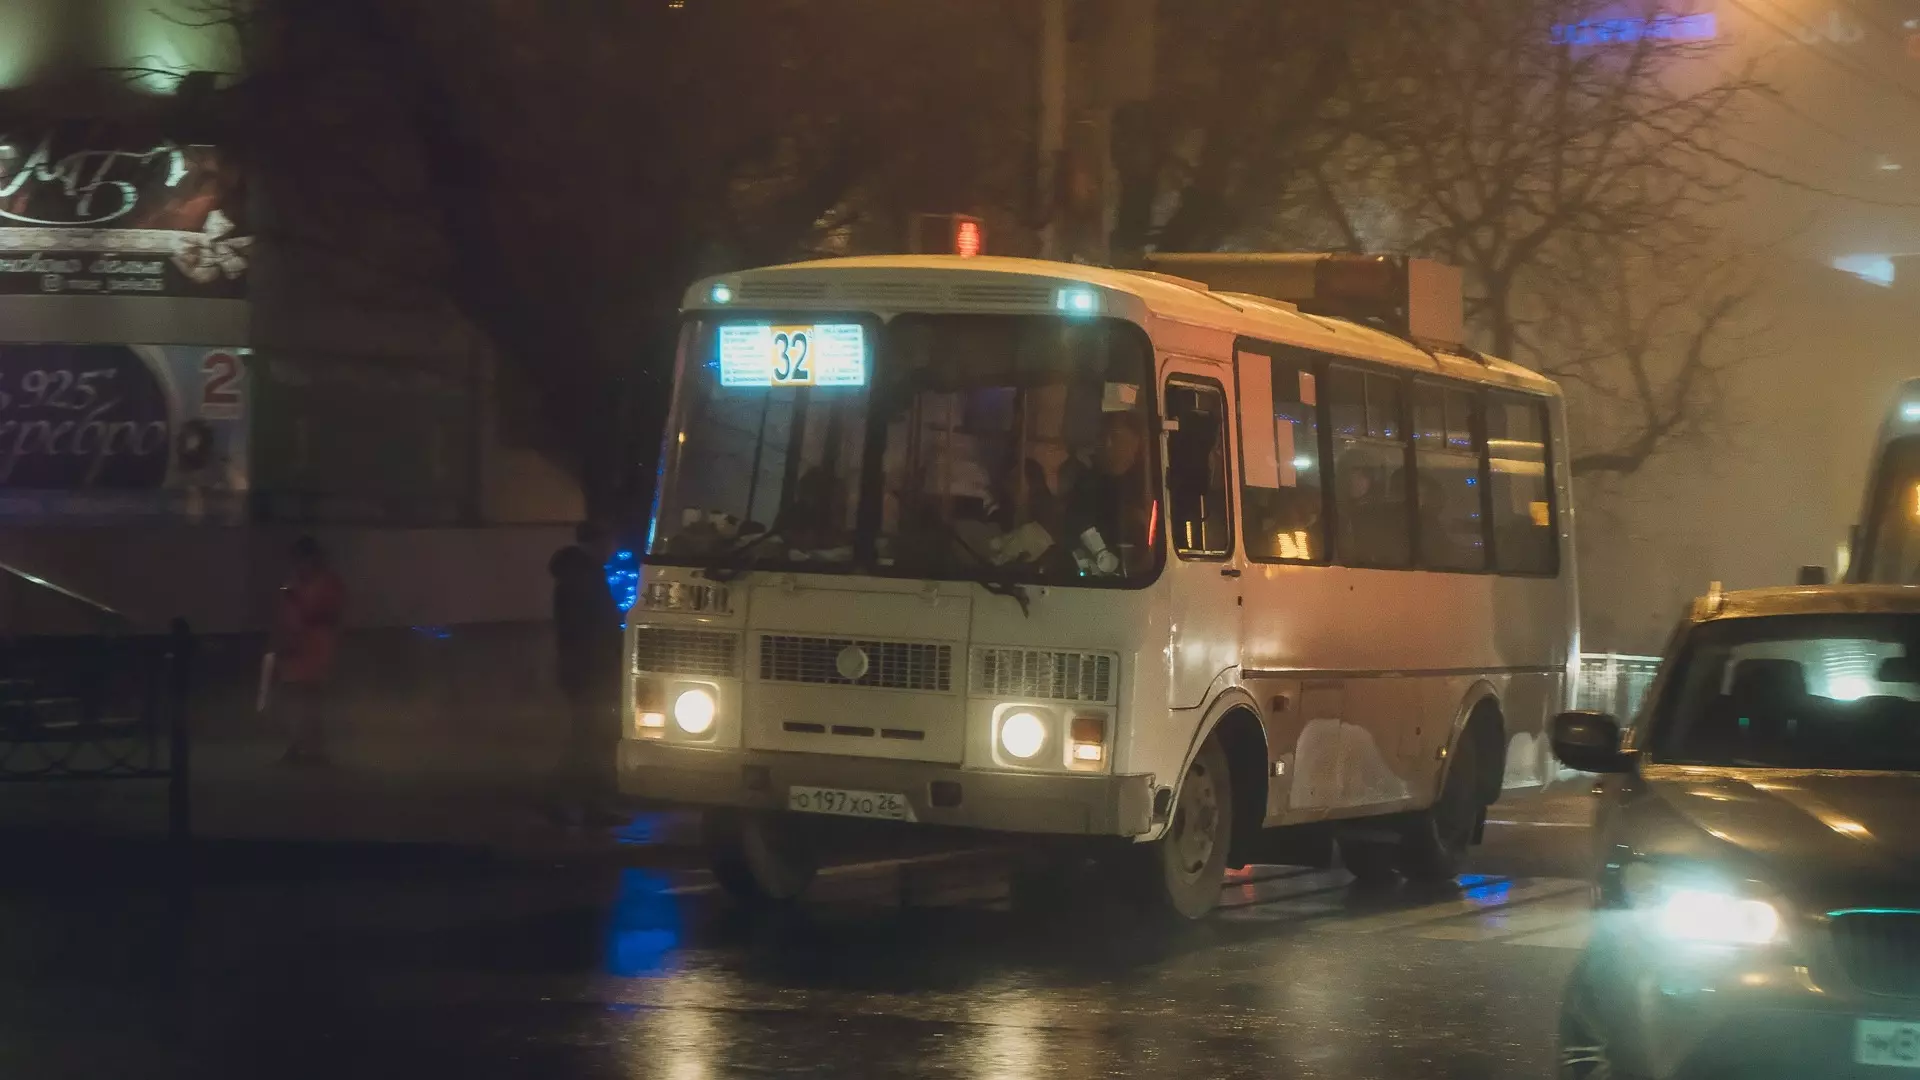 Обновленное расписание автобусов опубликовал автовокзал Петрозаводска